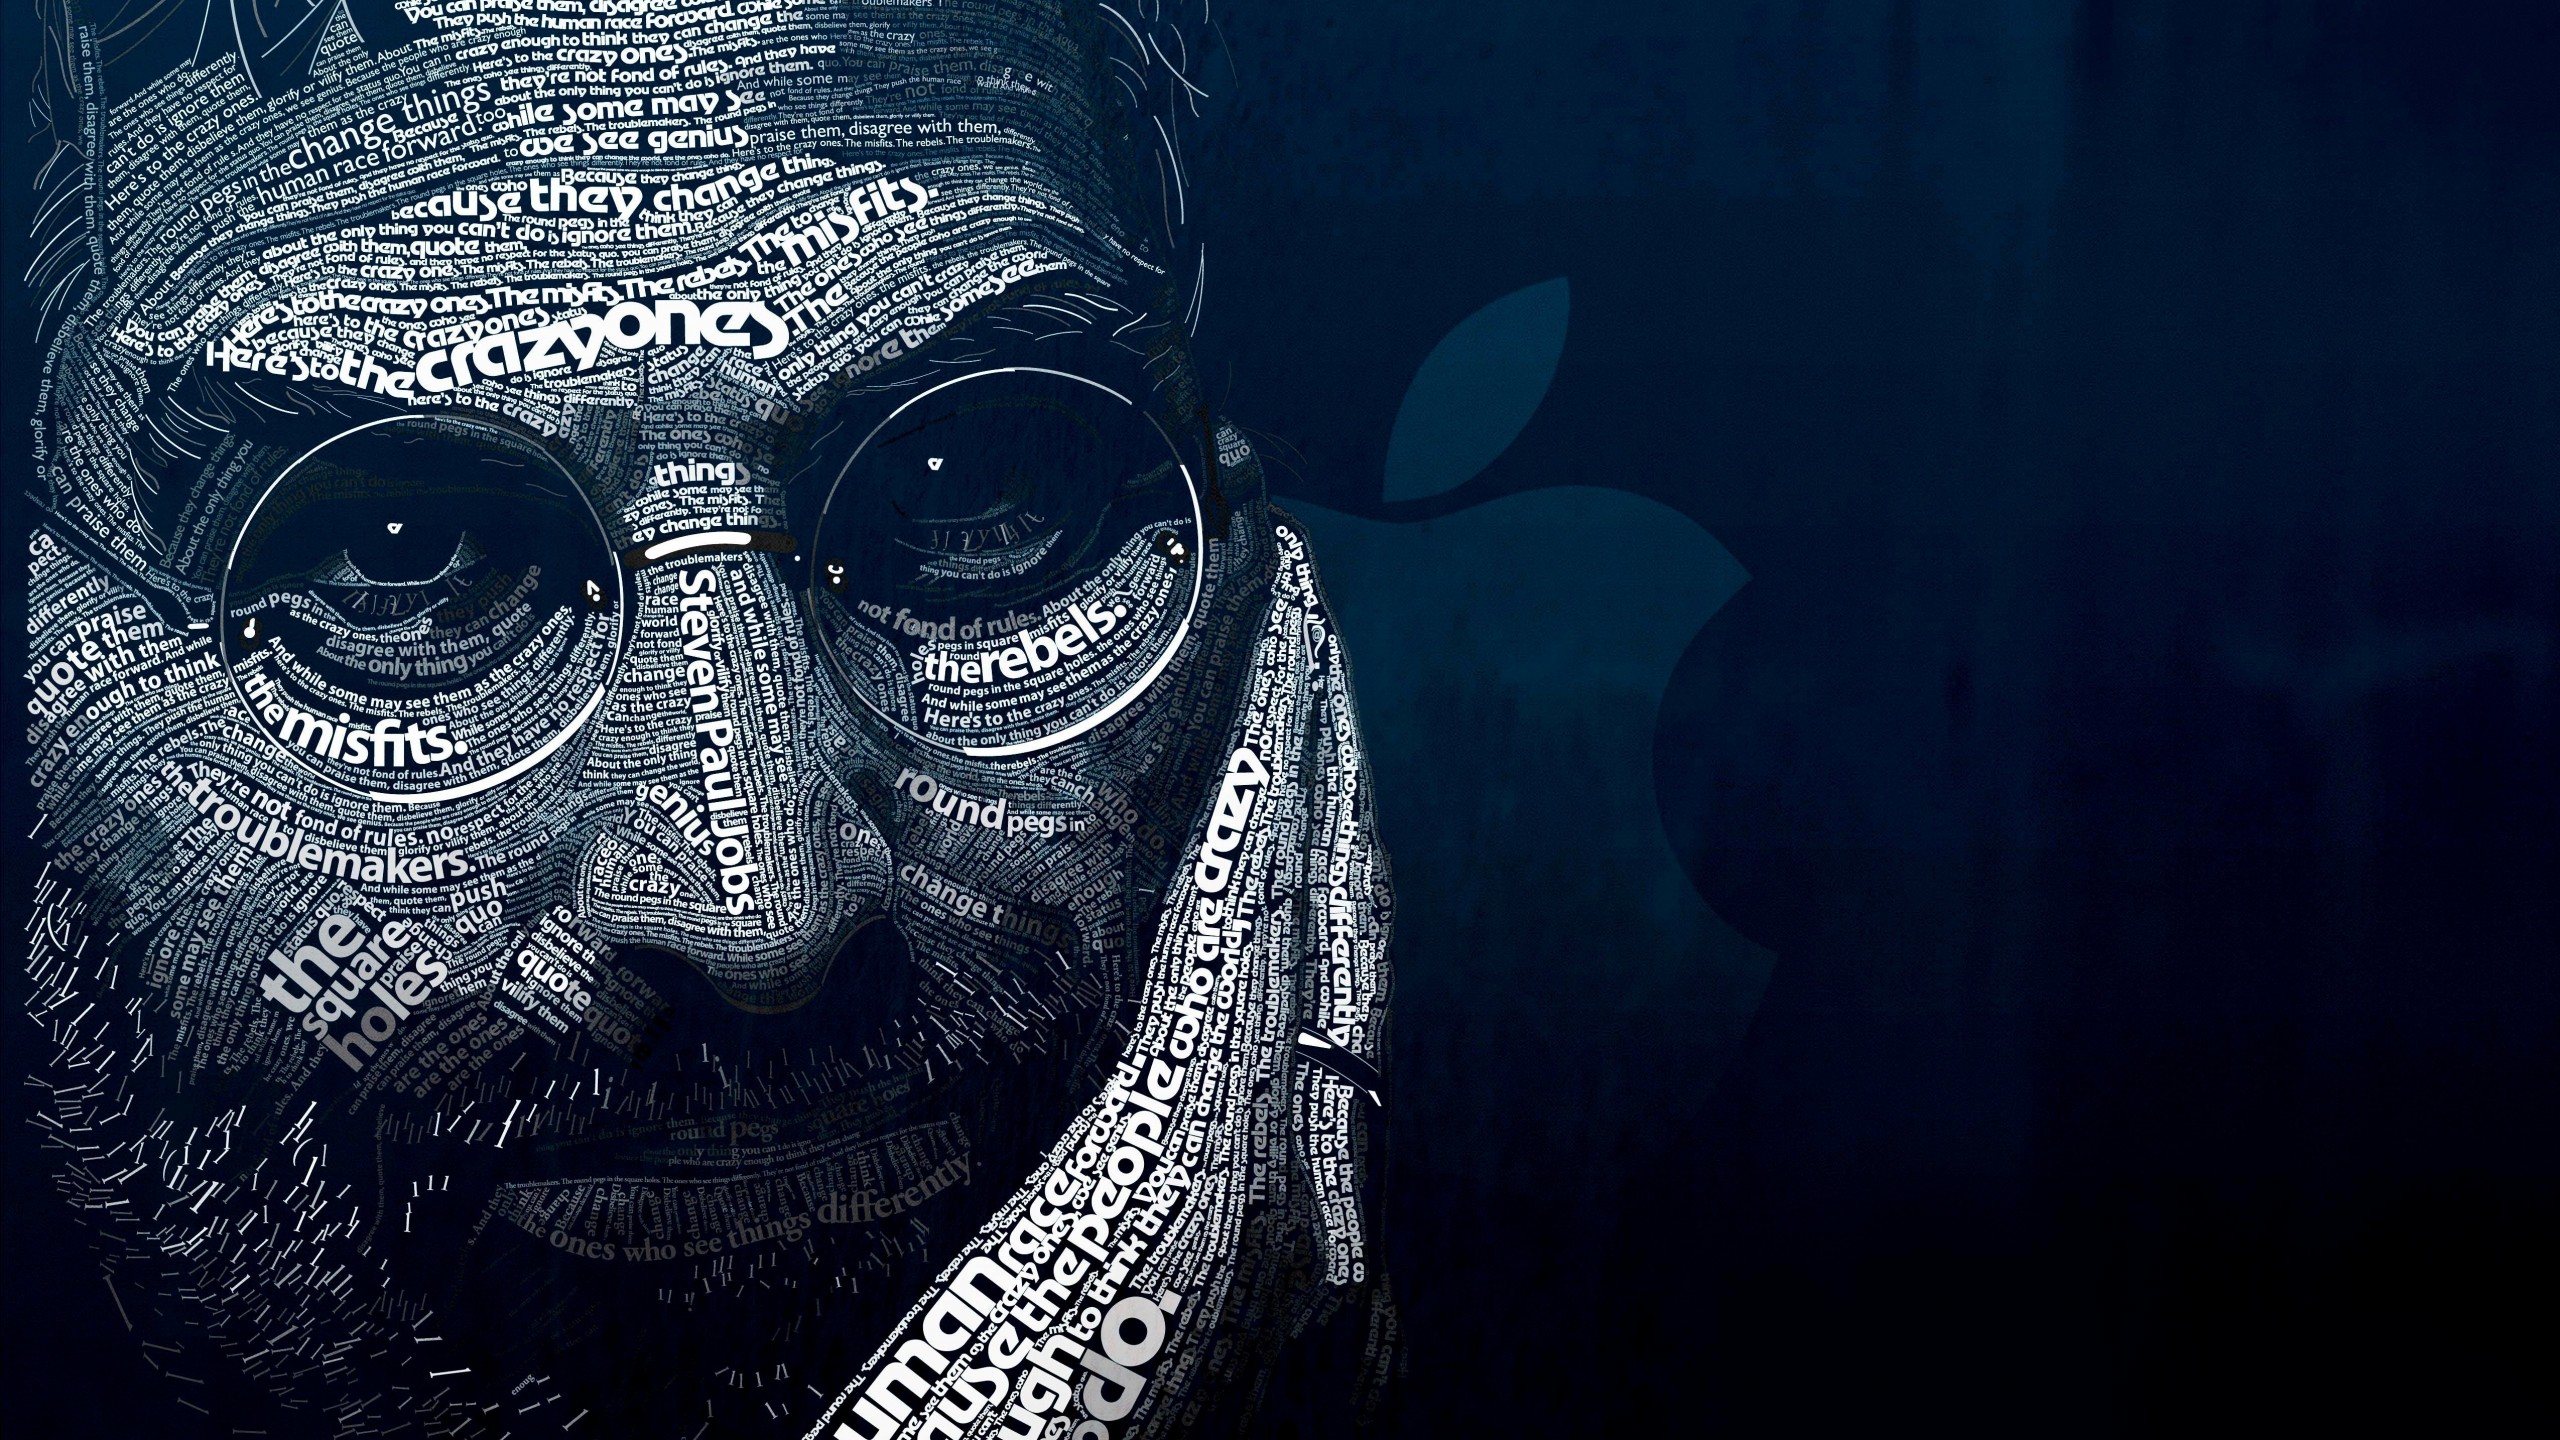 Steve Jobs Typographic Portrait Wallpaper for Desktop 2560x1440